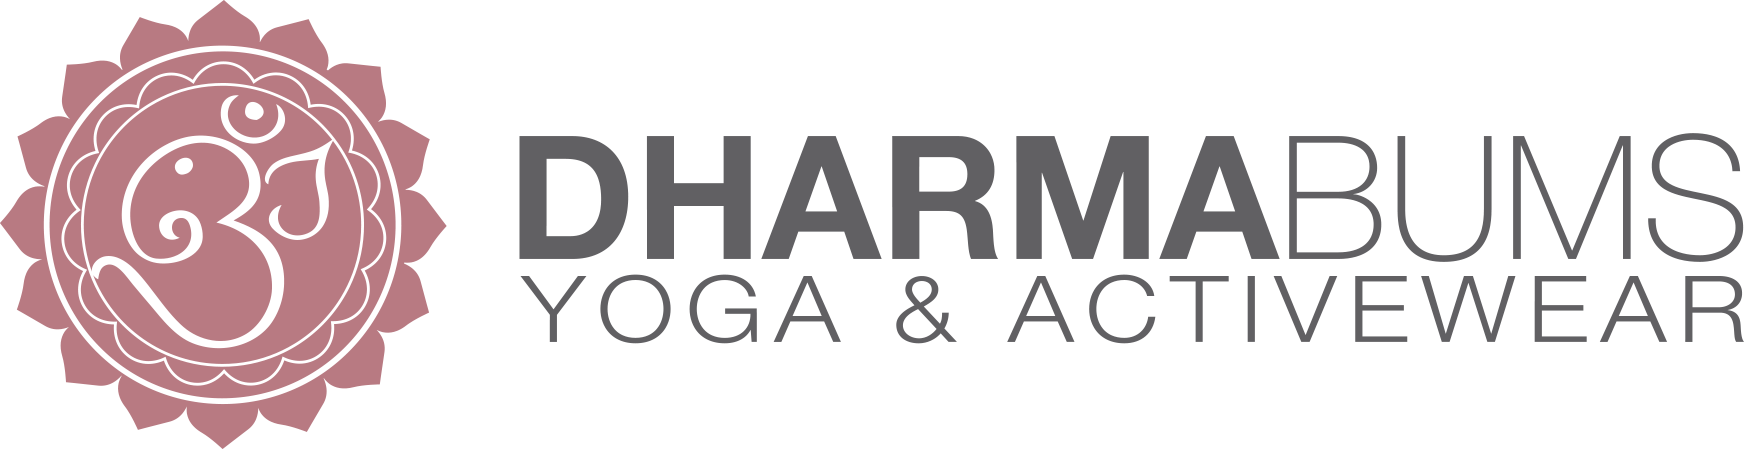 dharma bums yoga & activewear